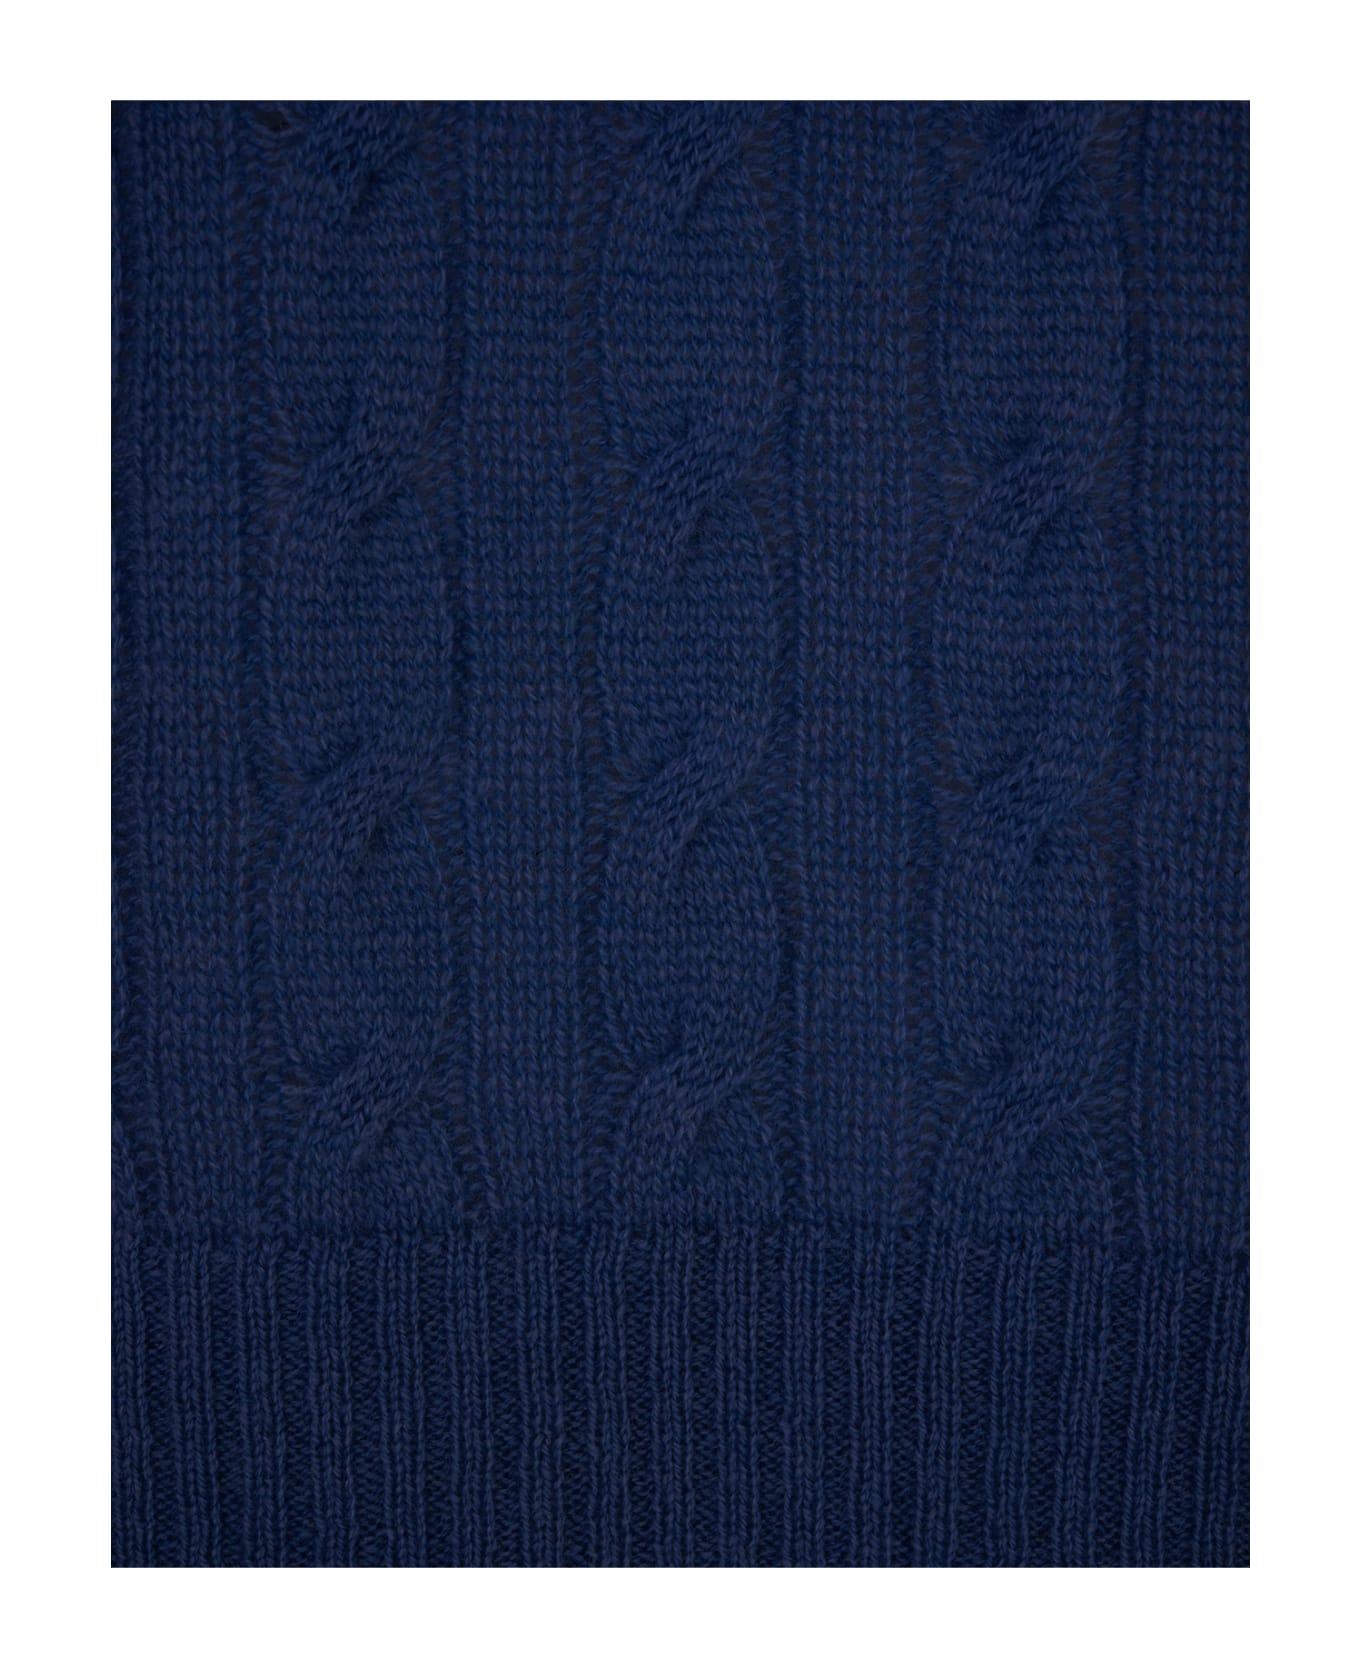 Etro Blue Braided Cashmere Sweater - Blue ニットウェア